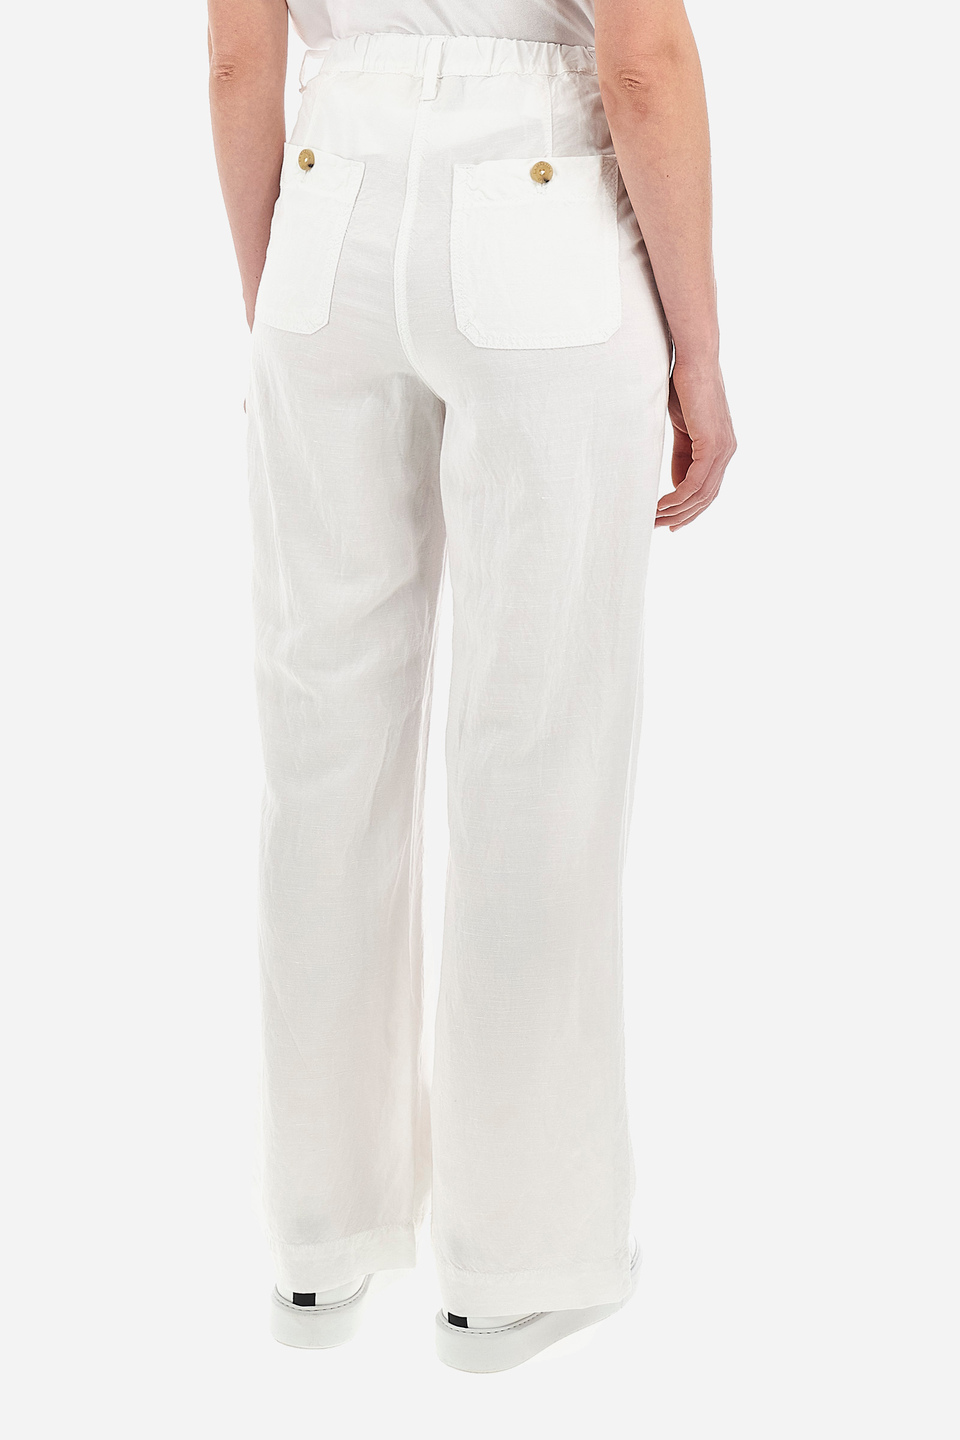 The Jetset - White Linen Women's Pants